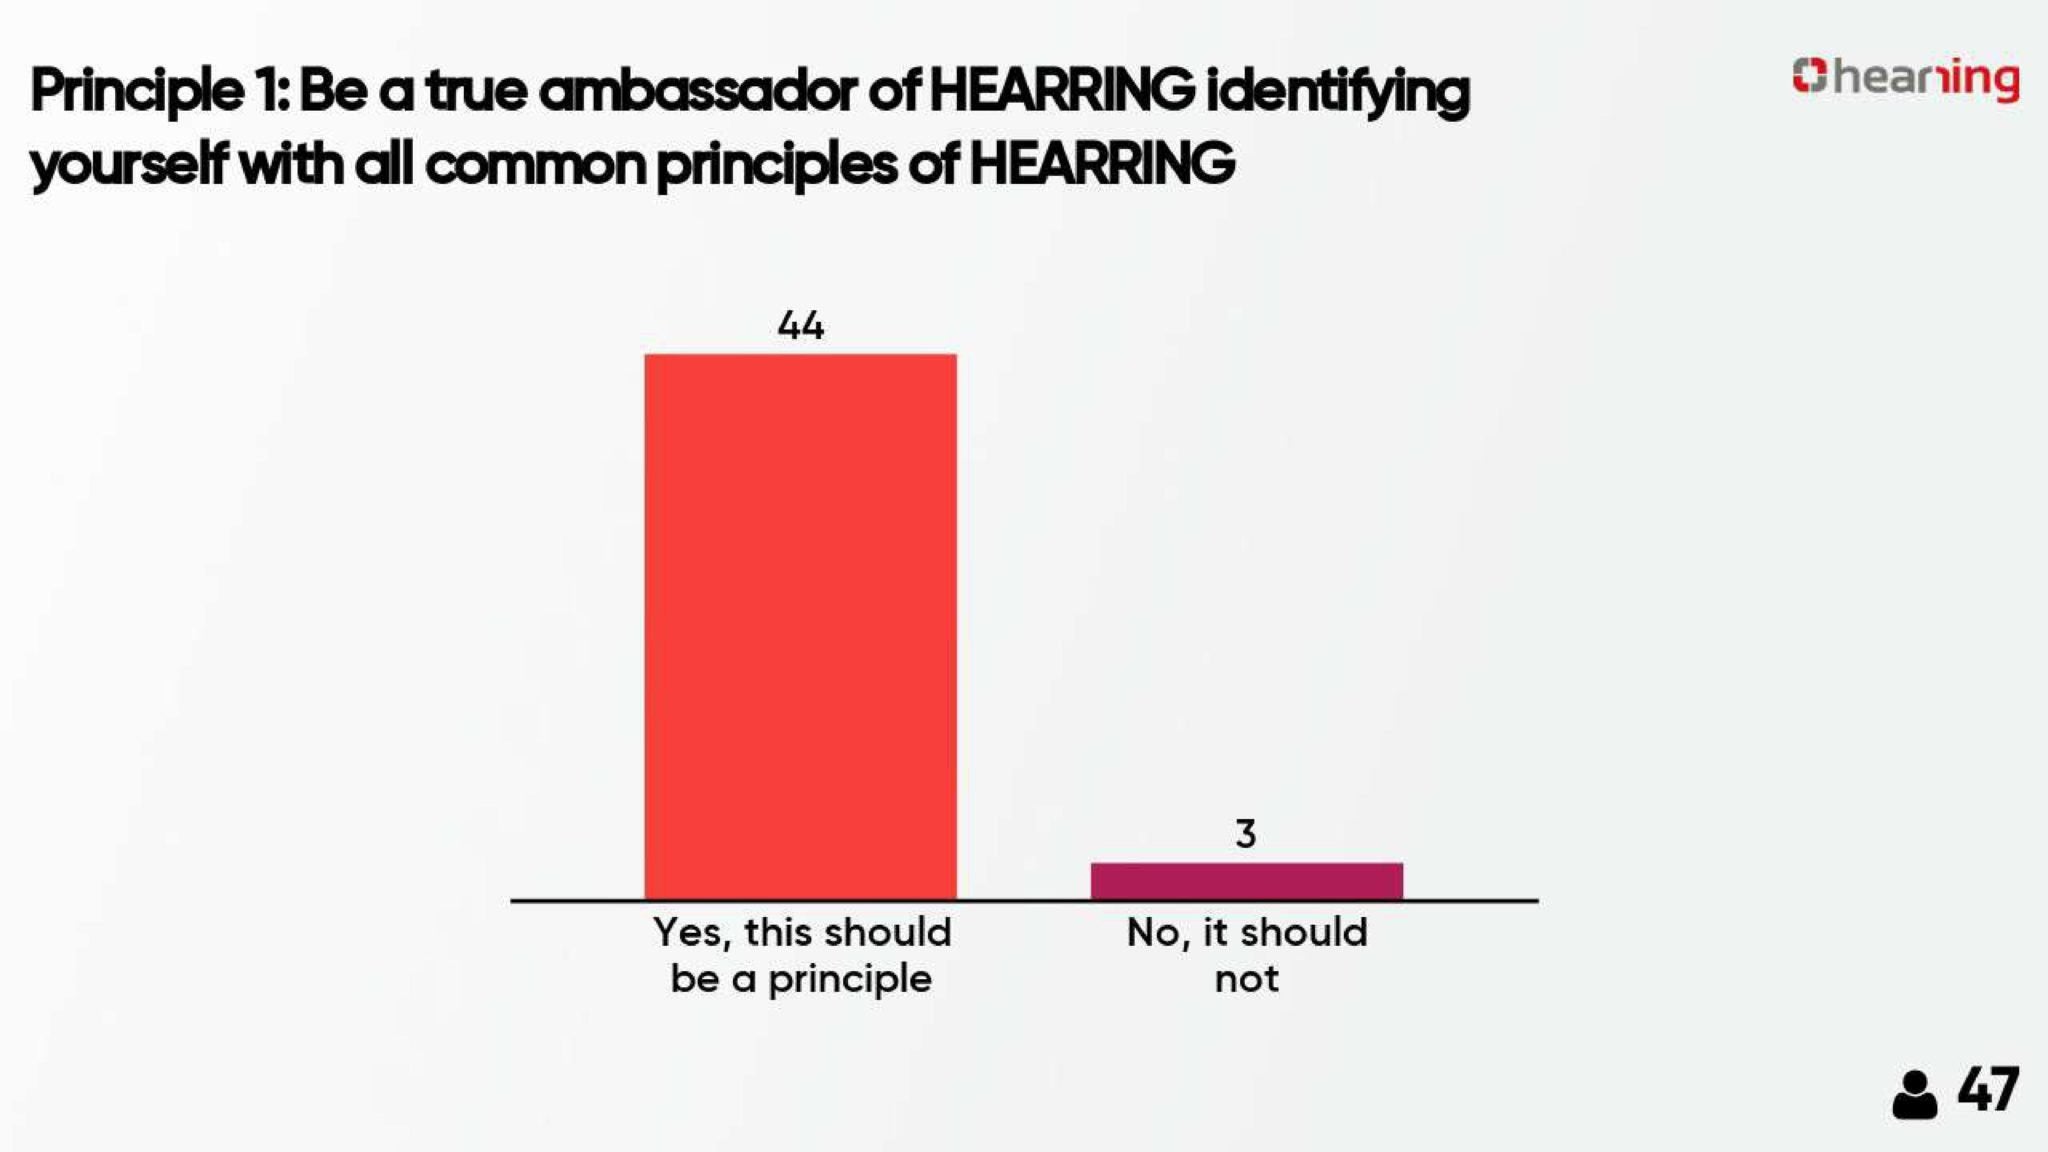 Hearing ambassadors